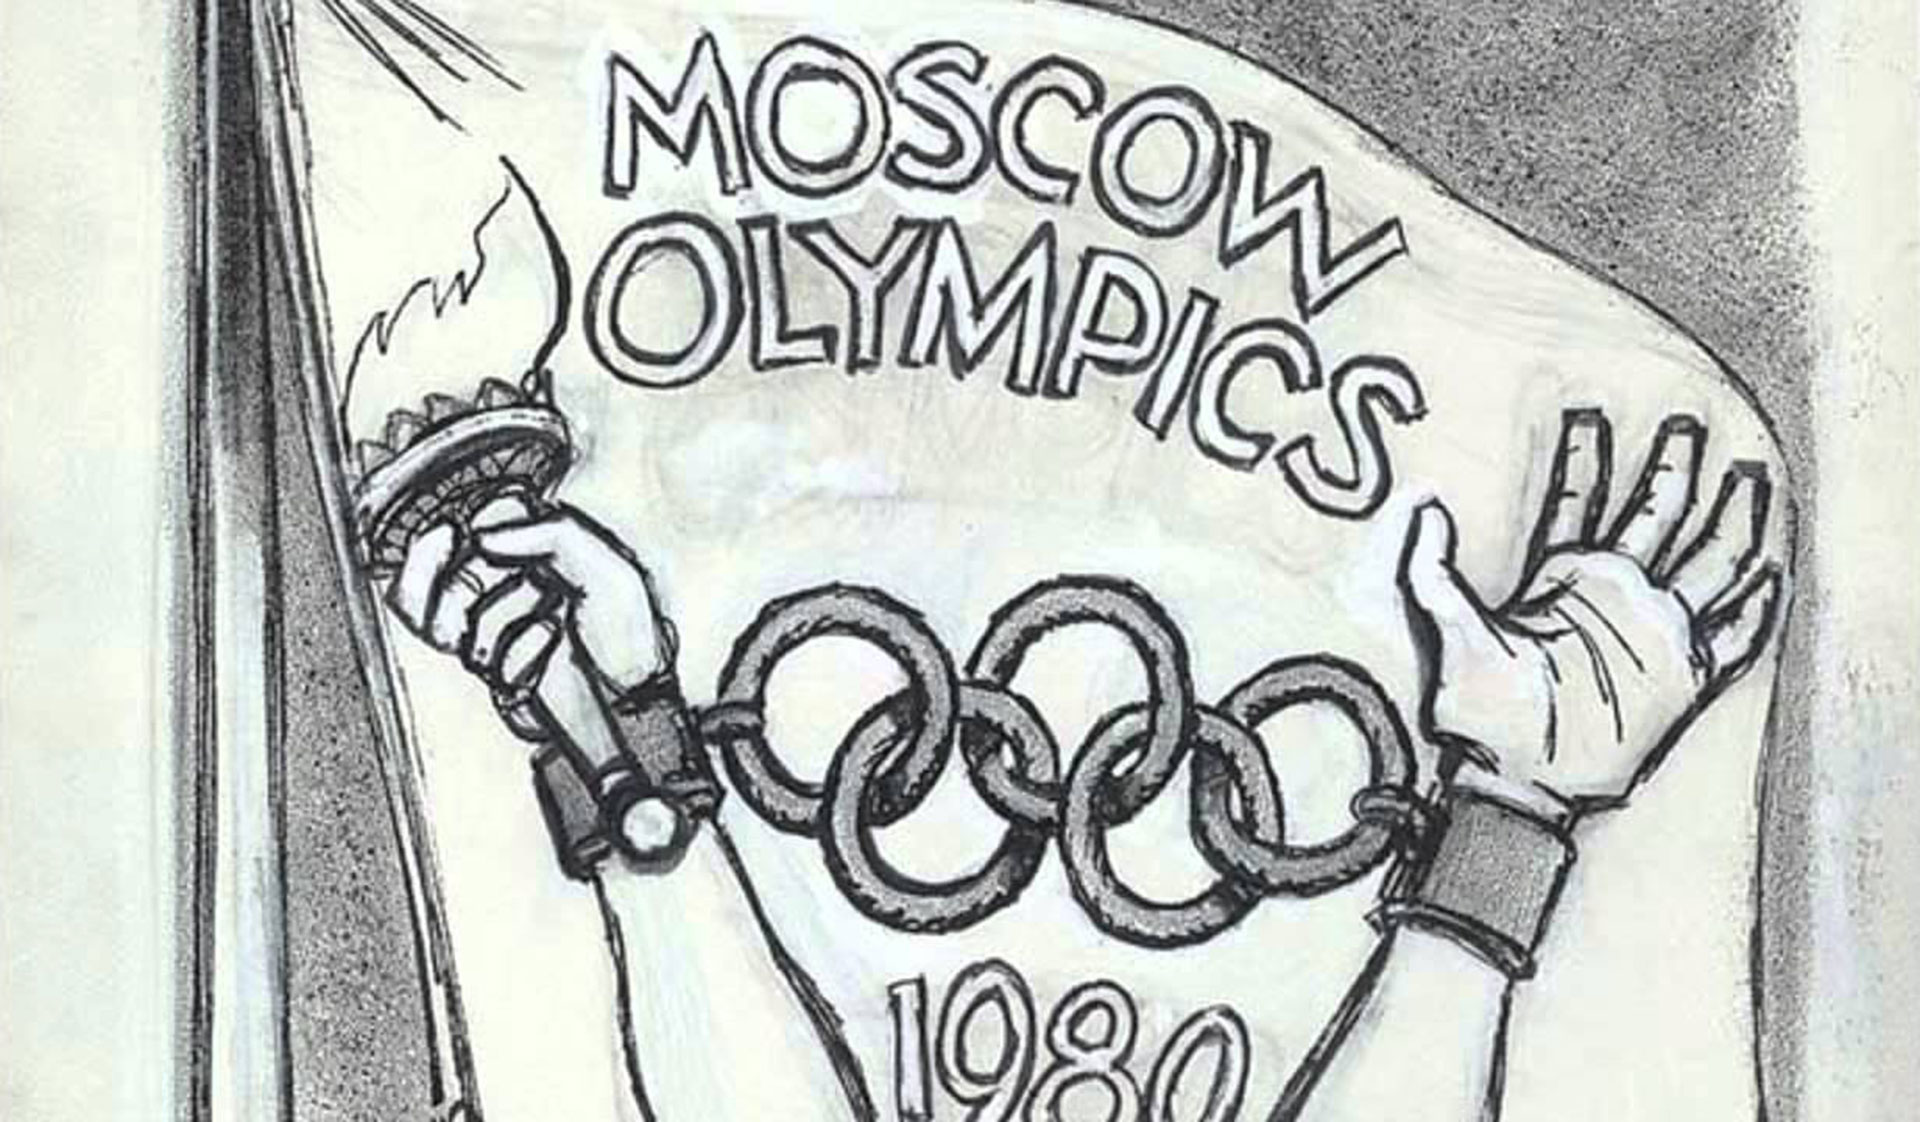 Бойкот стране. Бойкот 1980. Бойкот олимпиады 1980.